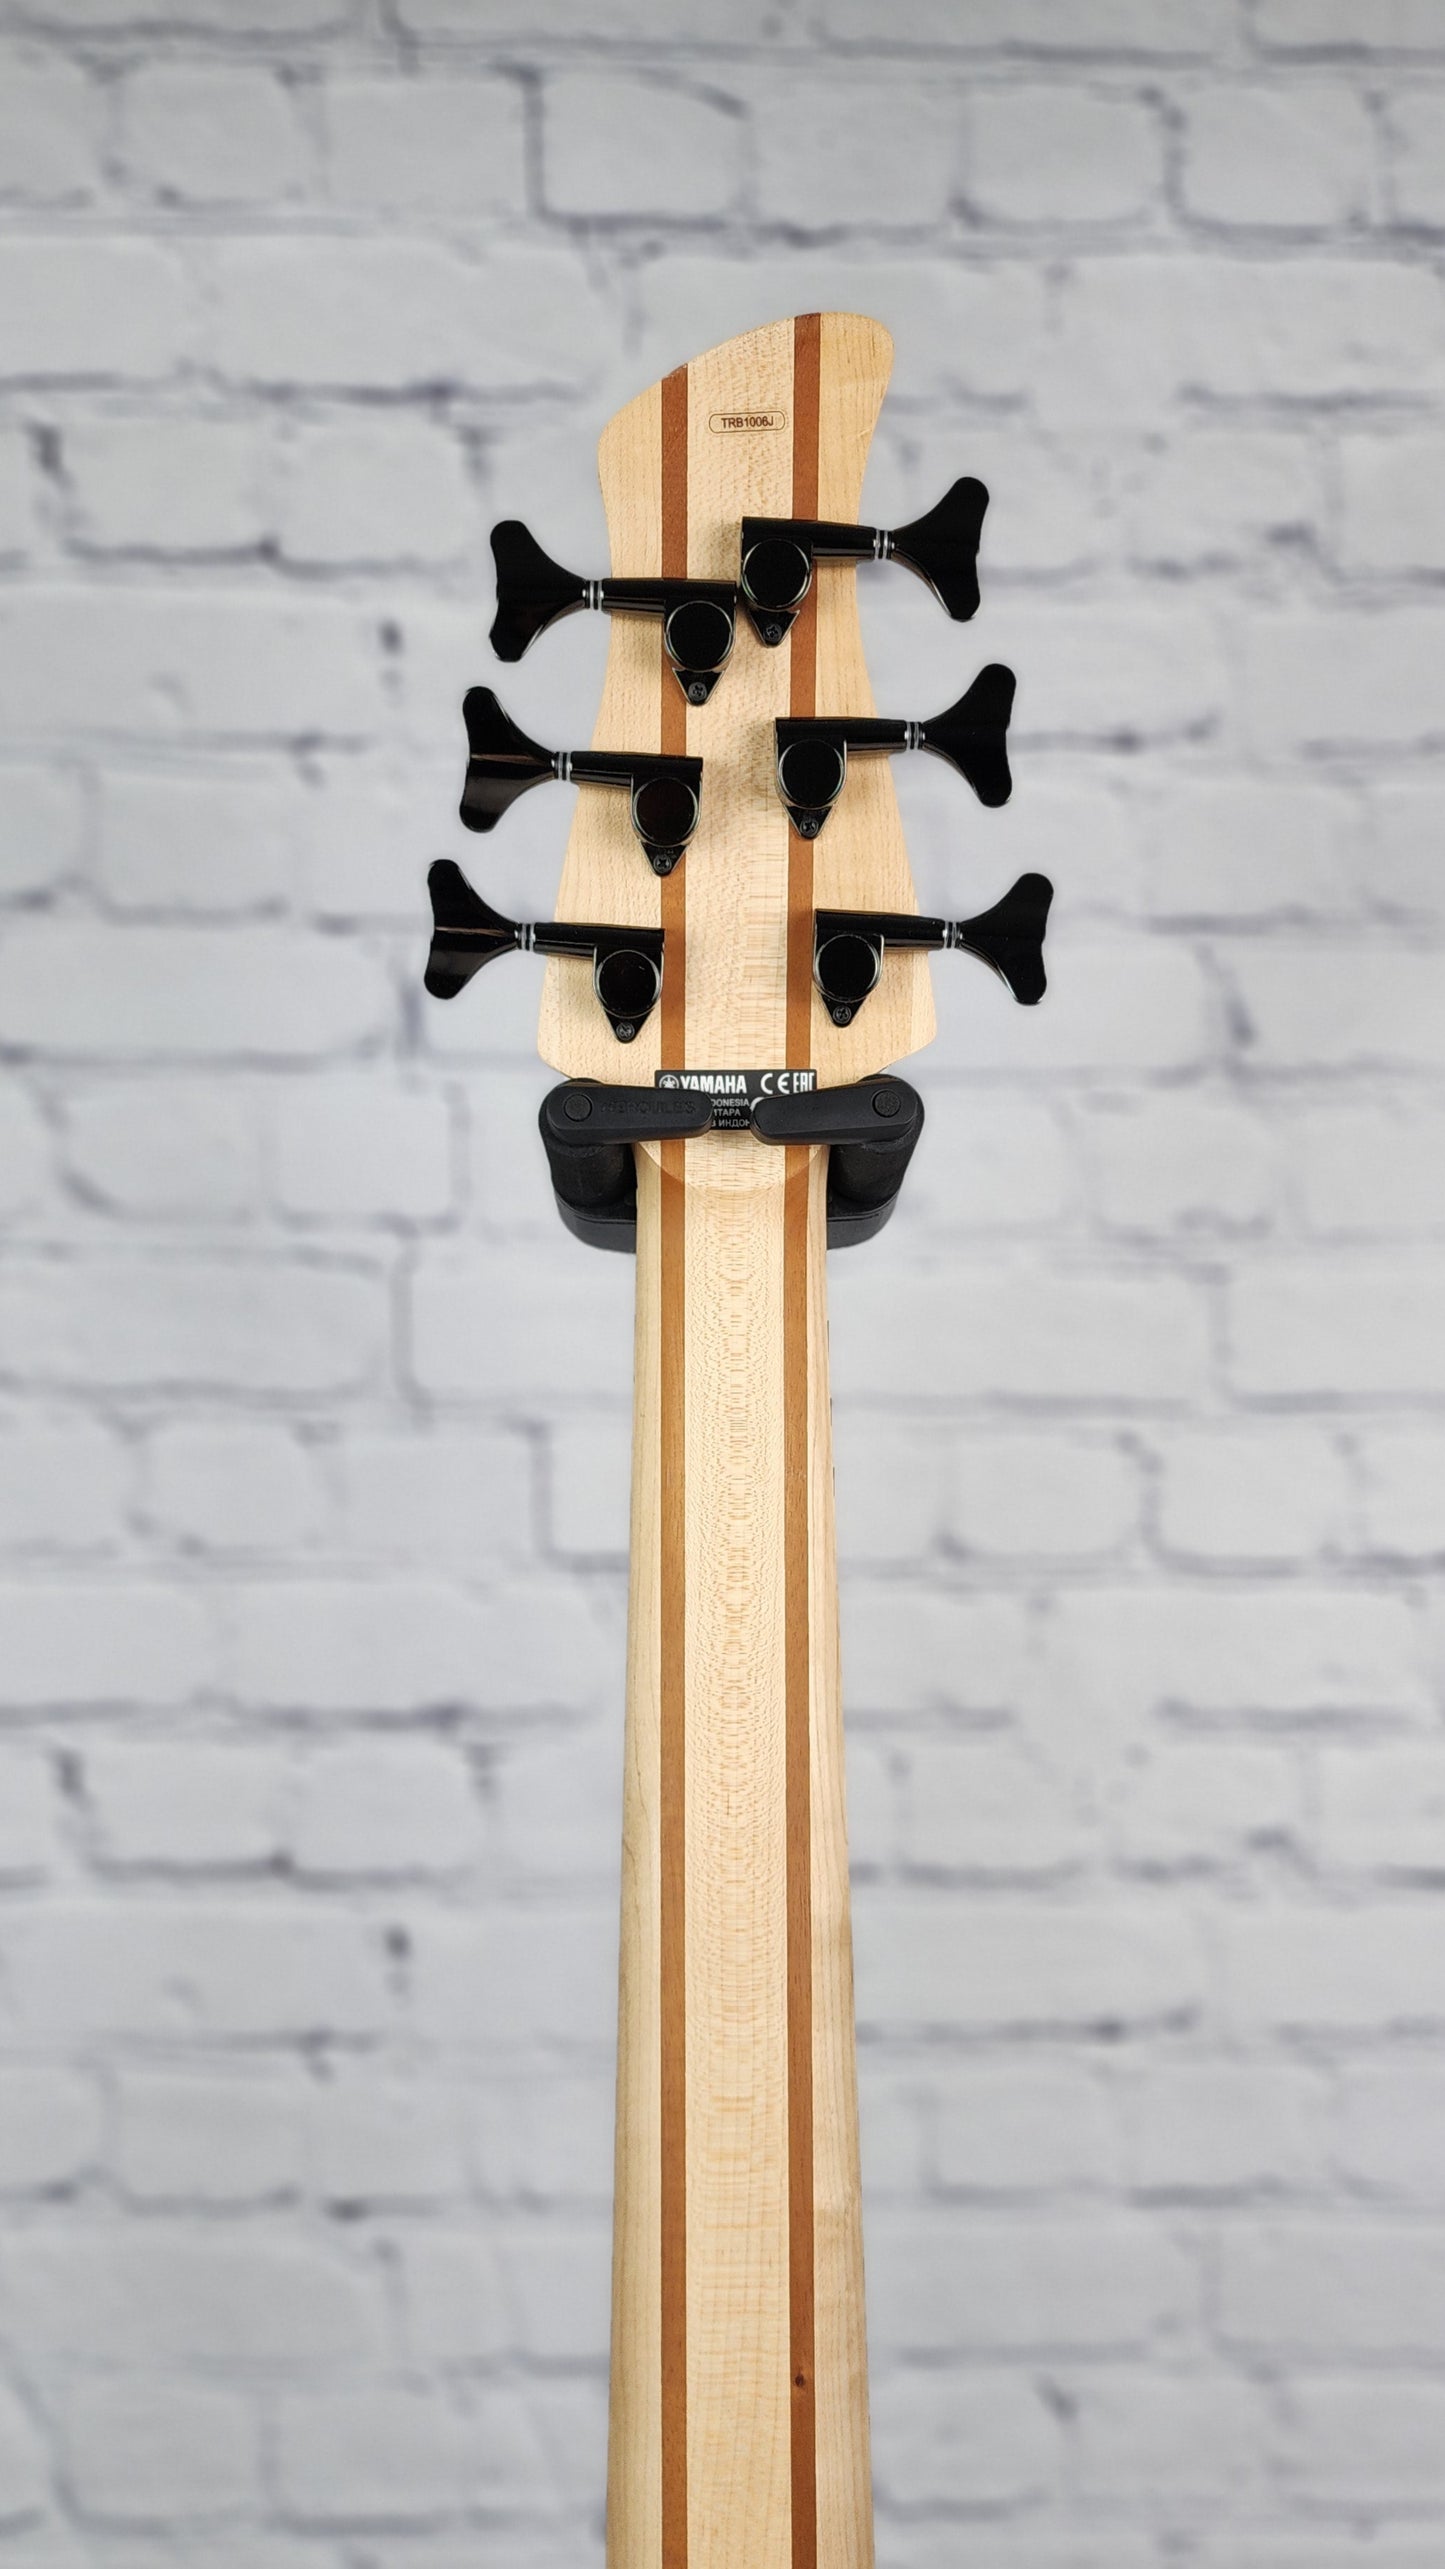 Yamaha TRB1006J CB 6 String Bass Guitar Caramel Brown